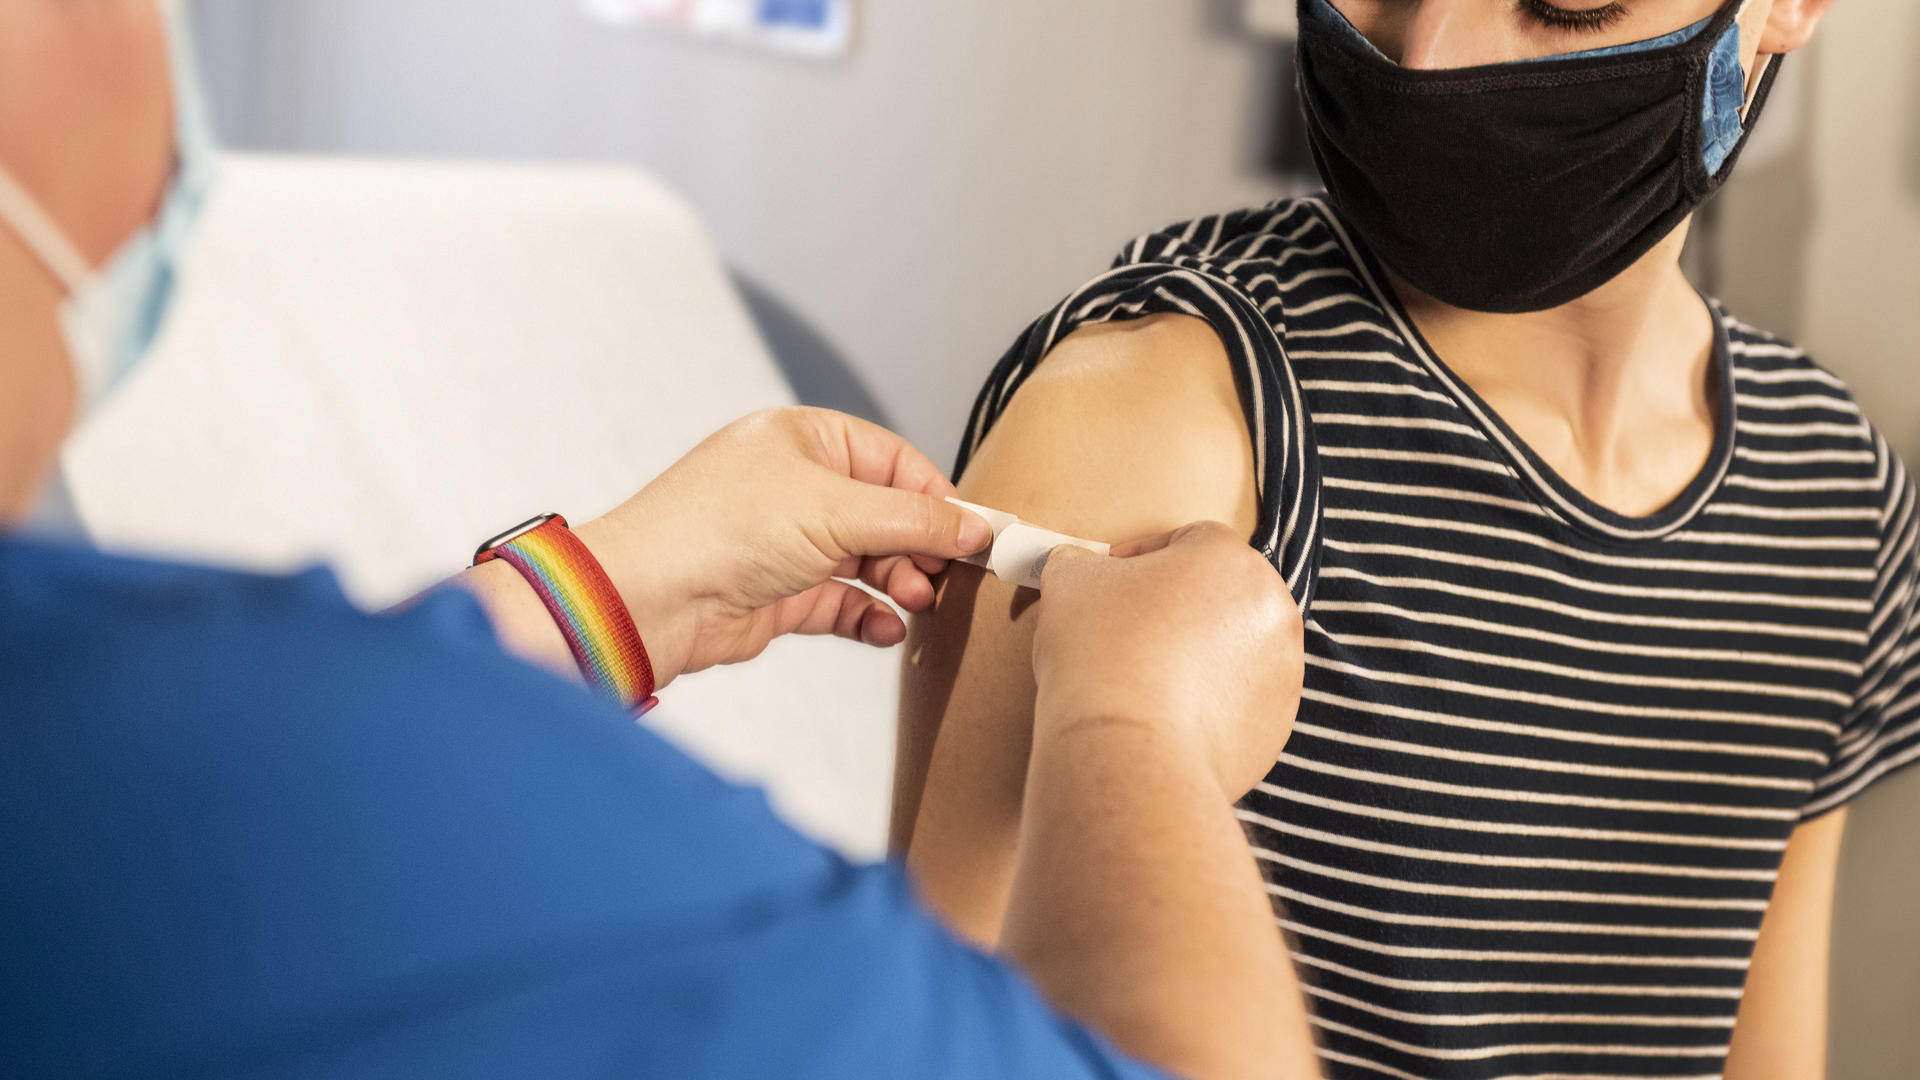 Hoitaja laittaa nuorelle laastaria käsivarteen rokotuksen jälkeen